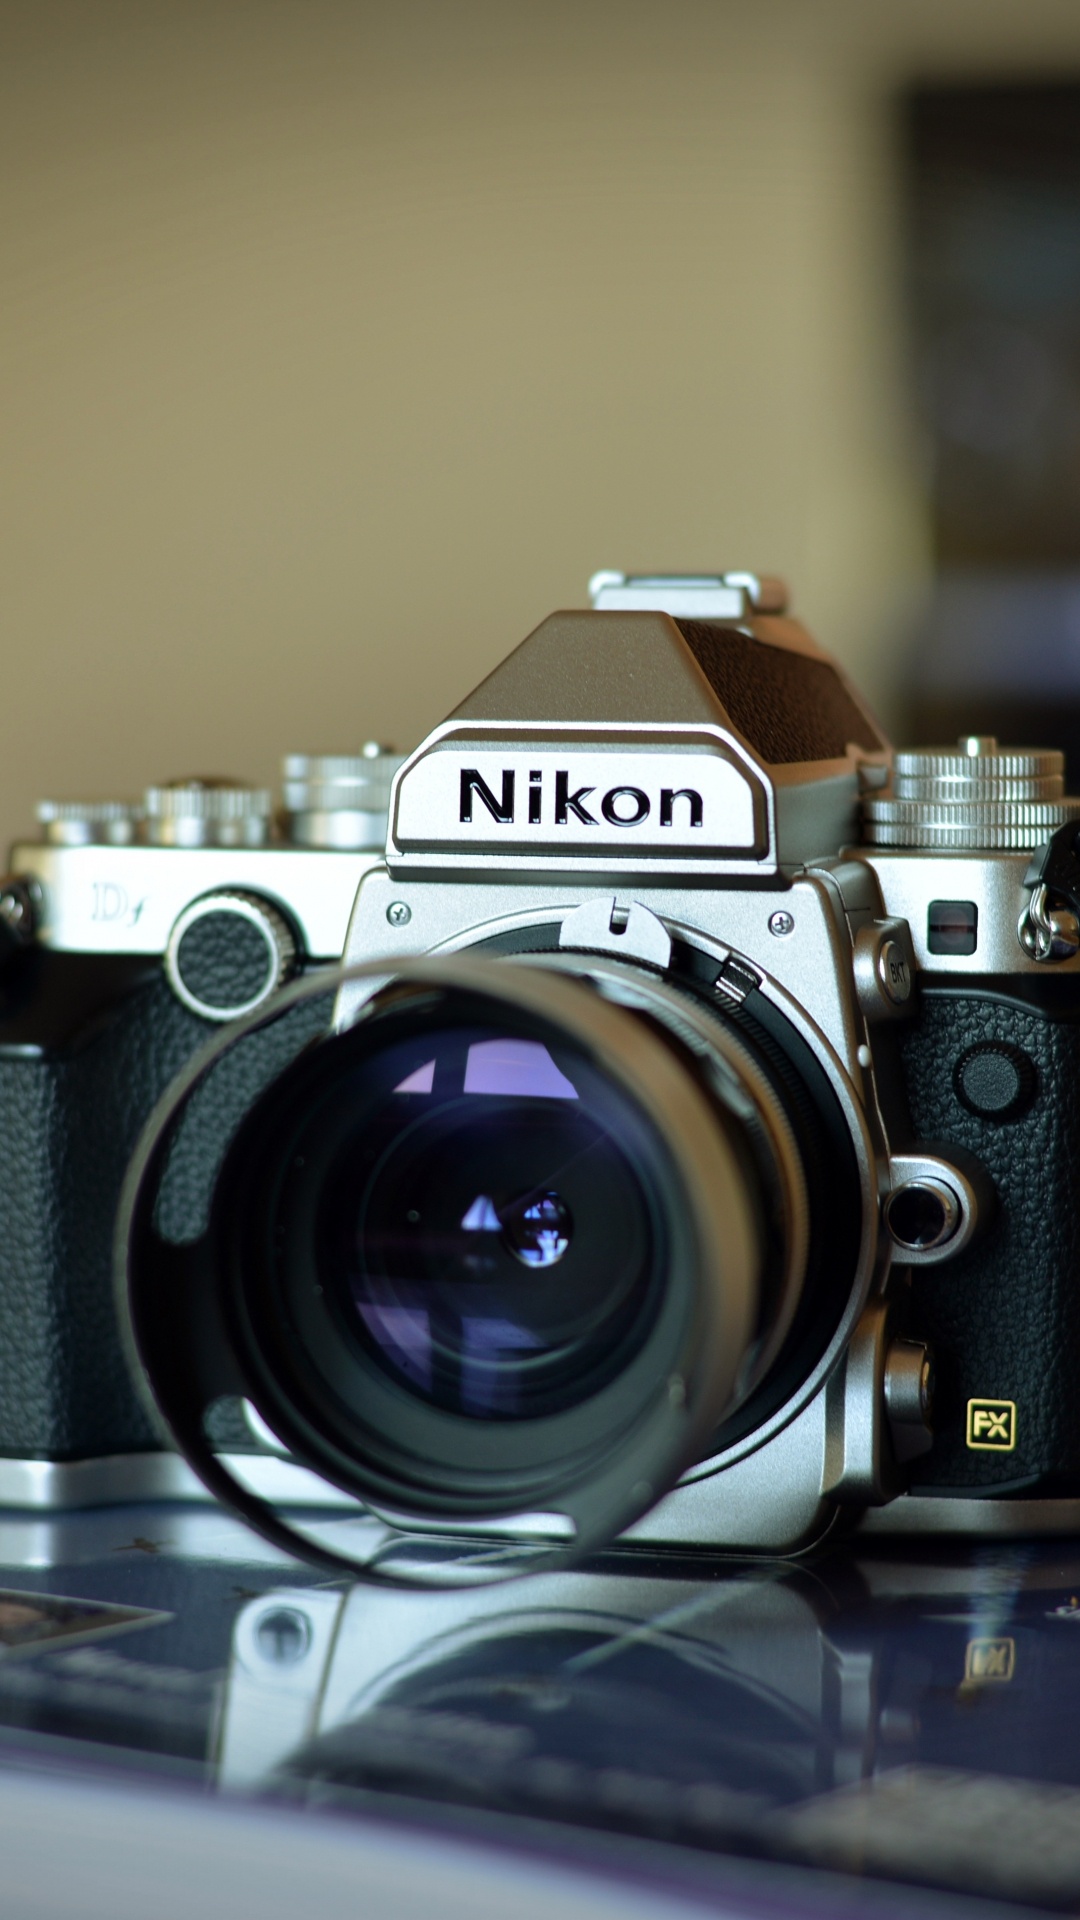 尼康, 光学照相机, 拍摄像头, 摄像机的附件, 数字照相机 壁纸 1080x1920 允许